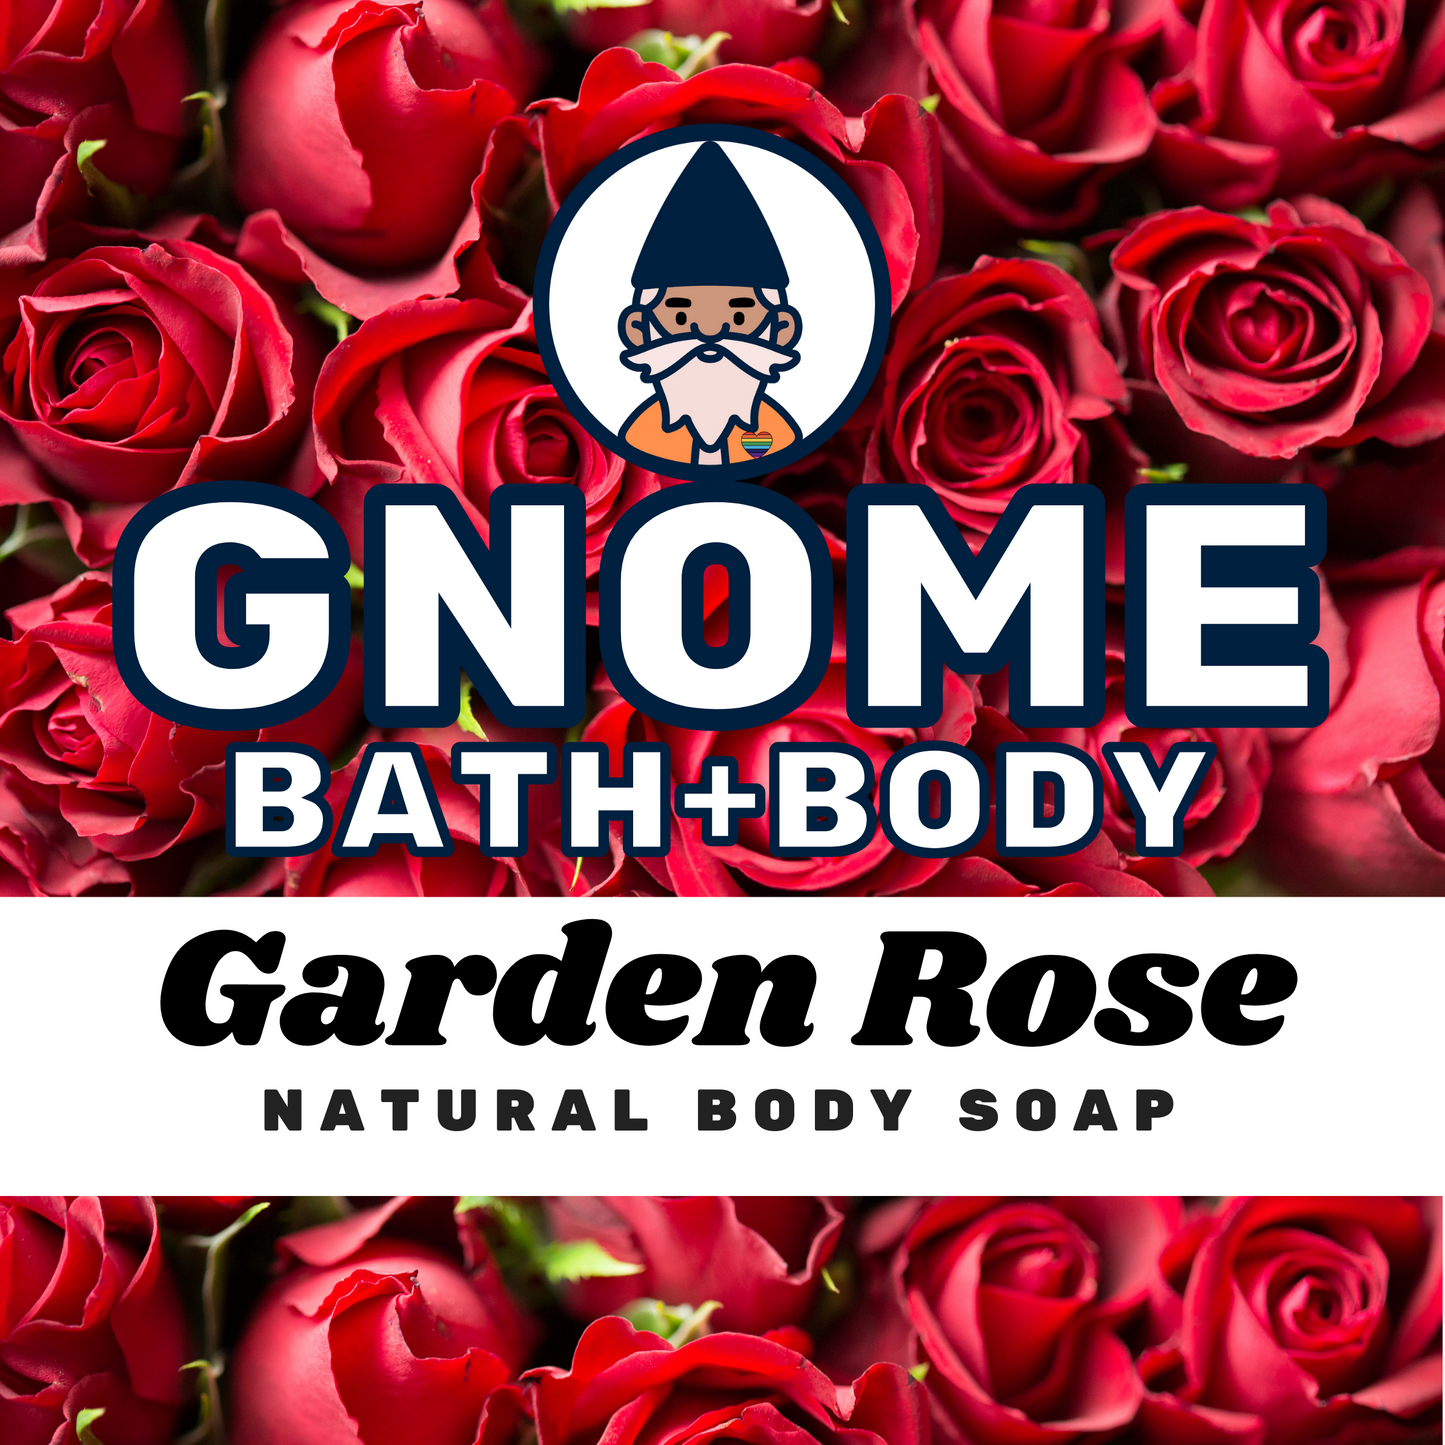 Garden Rose Natural Body Soap